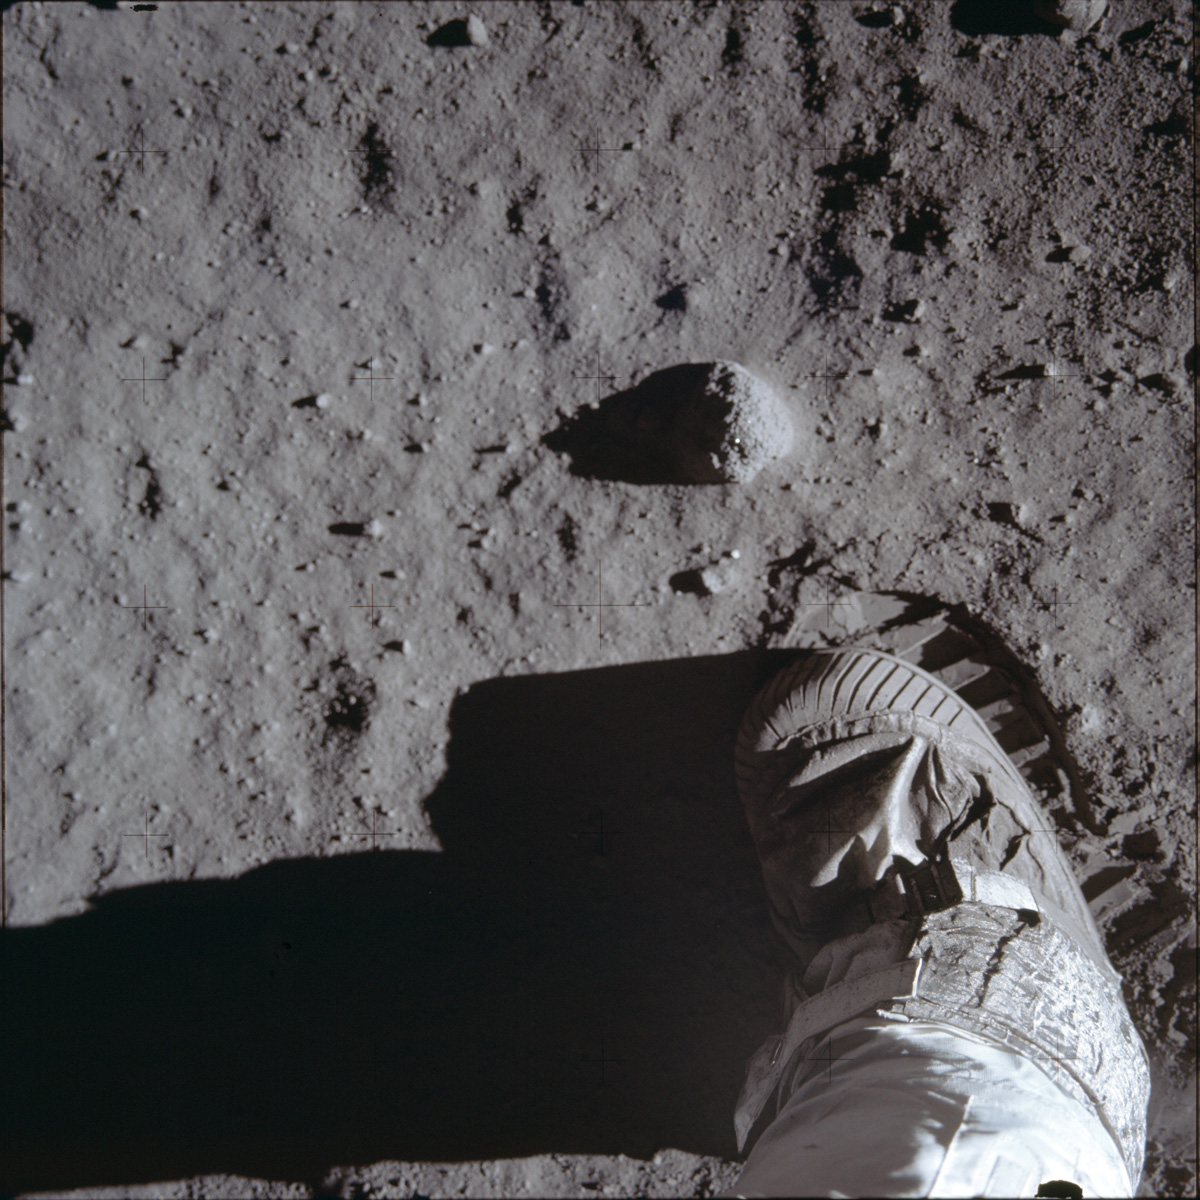 Rare Photos Reveal Fascinating Views Of The Apollo 11 Moon Landing